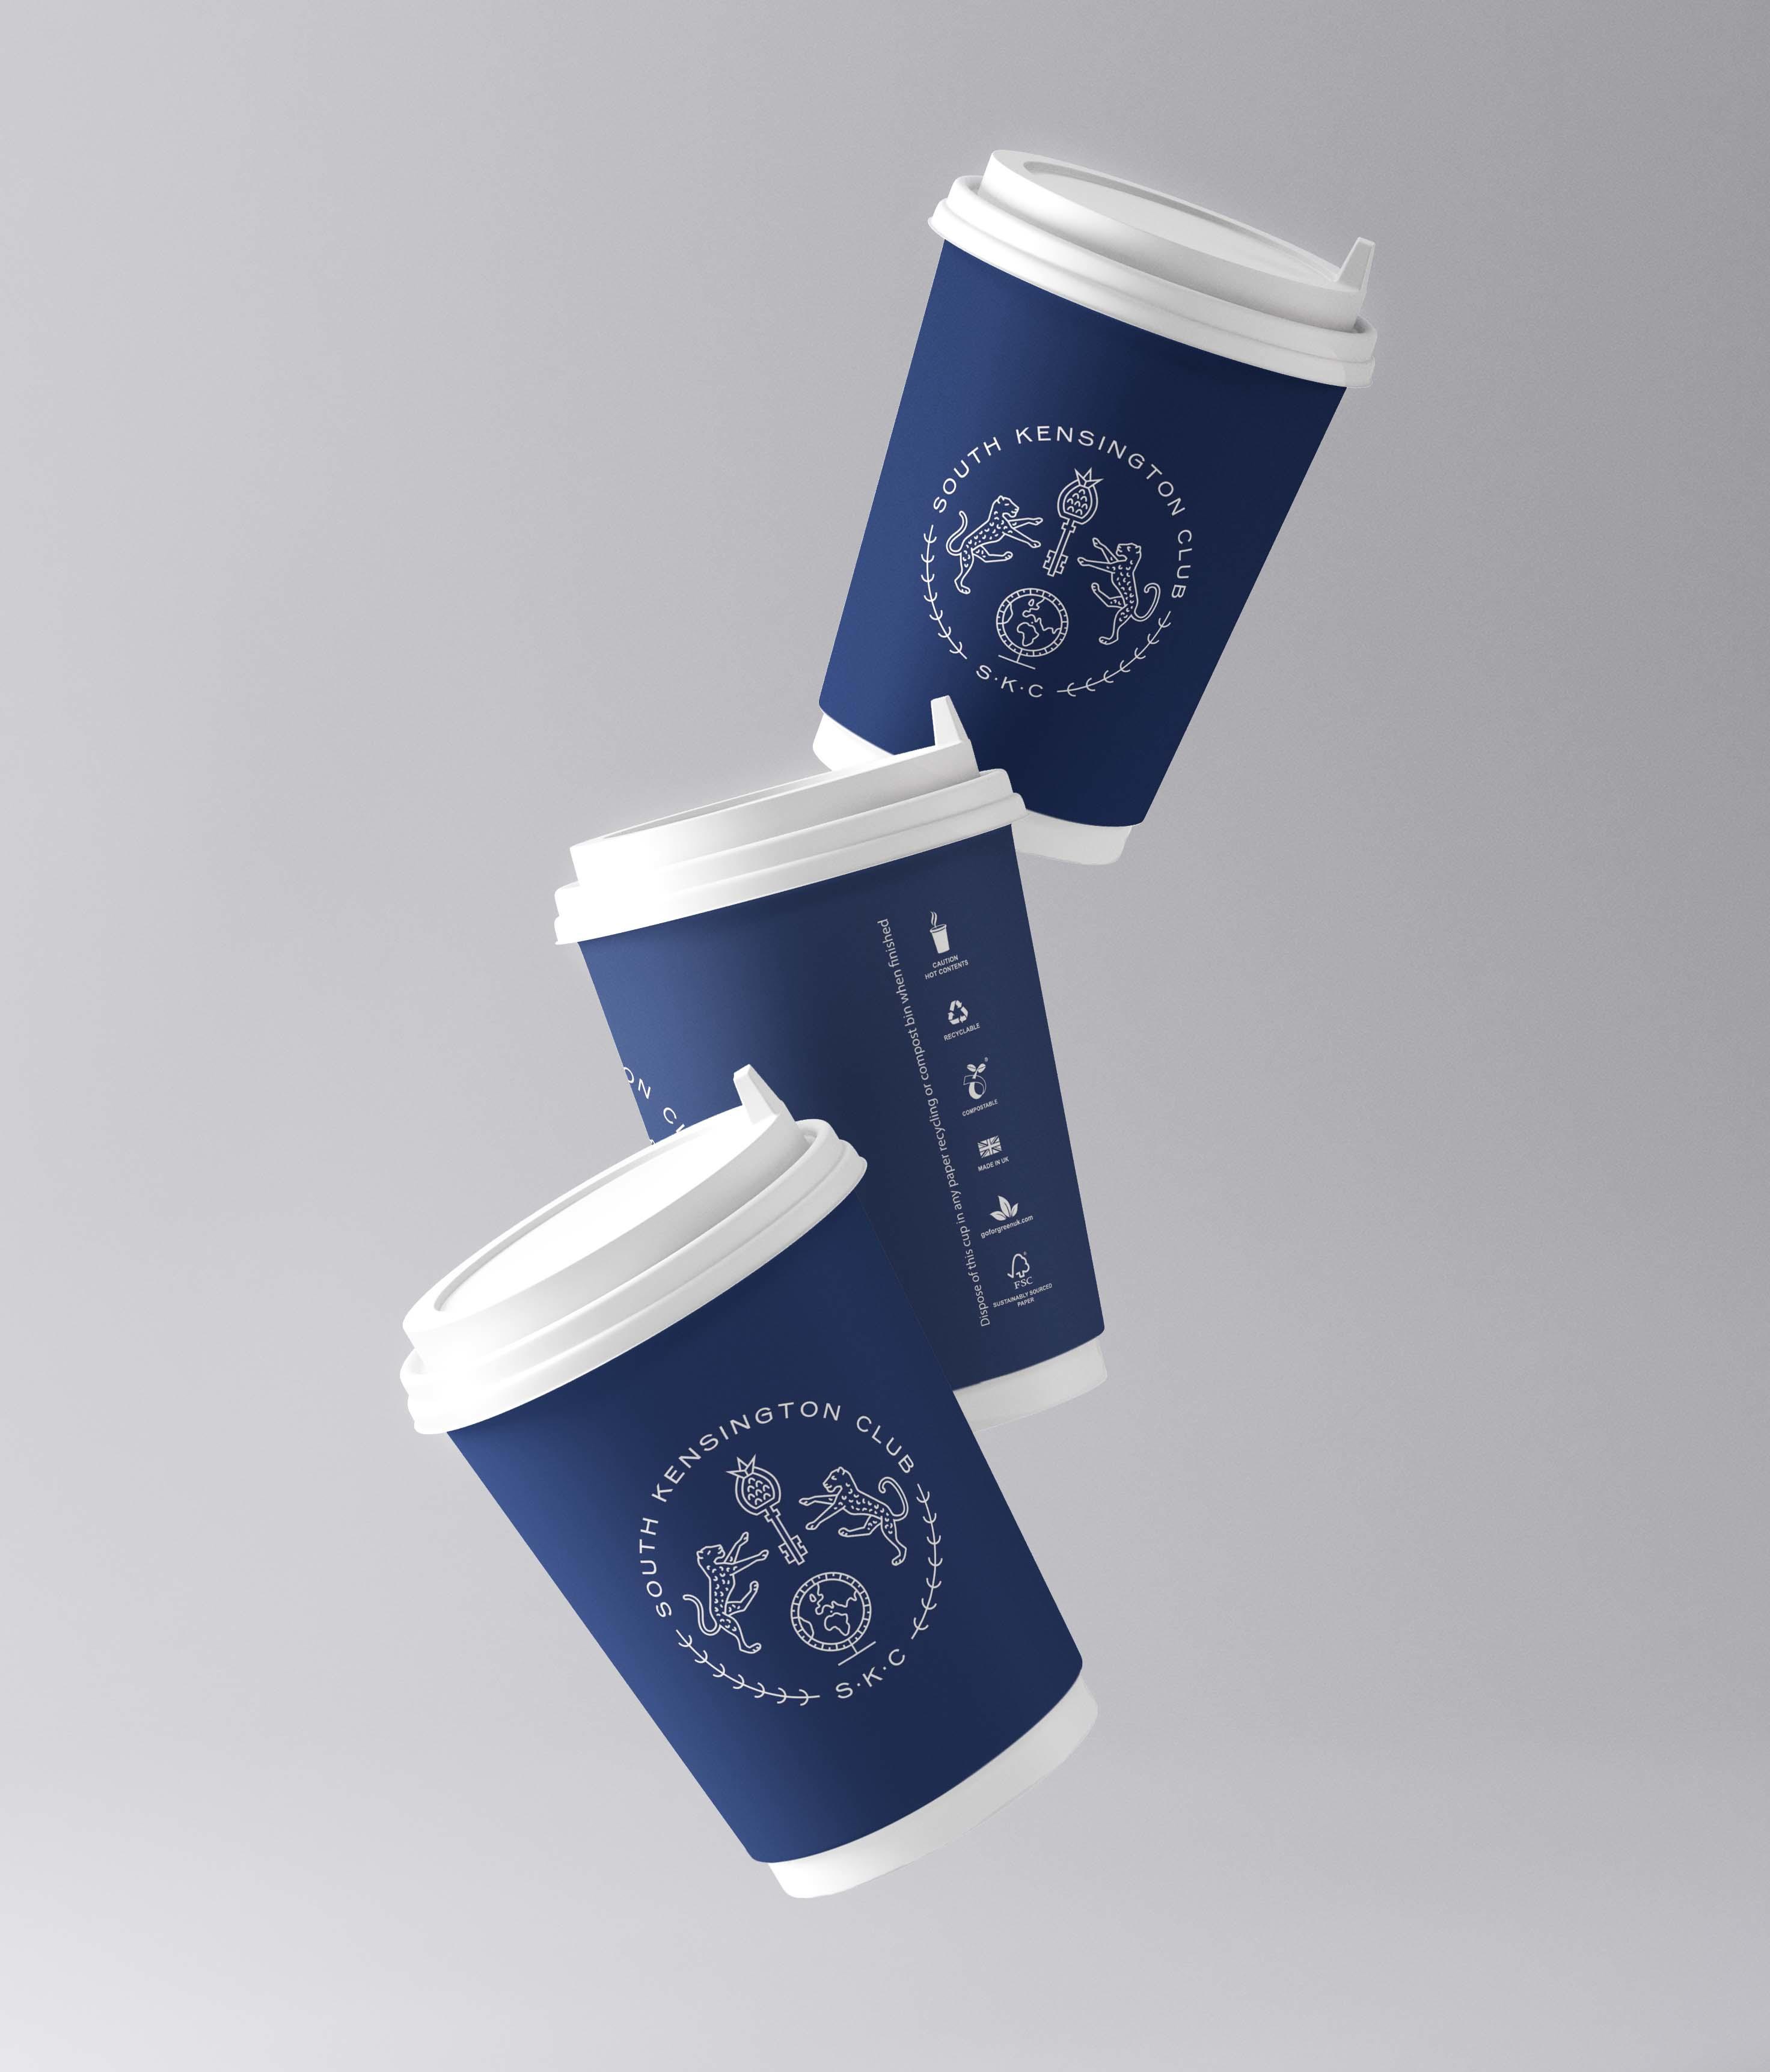 1,000 12oz DW Cups -South Kensington Club DW Coffee cups - 1